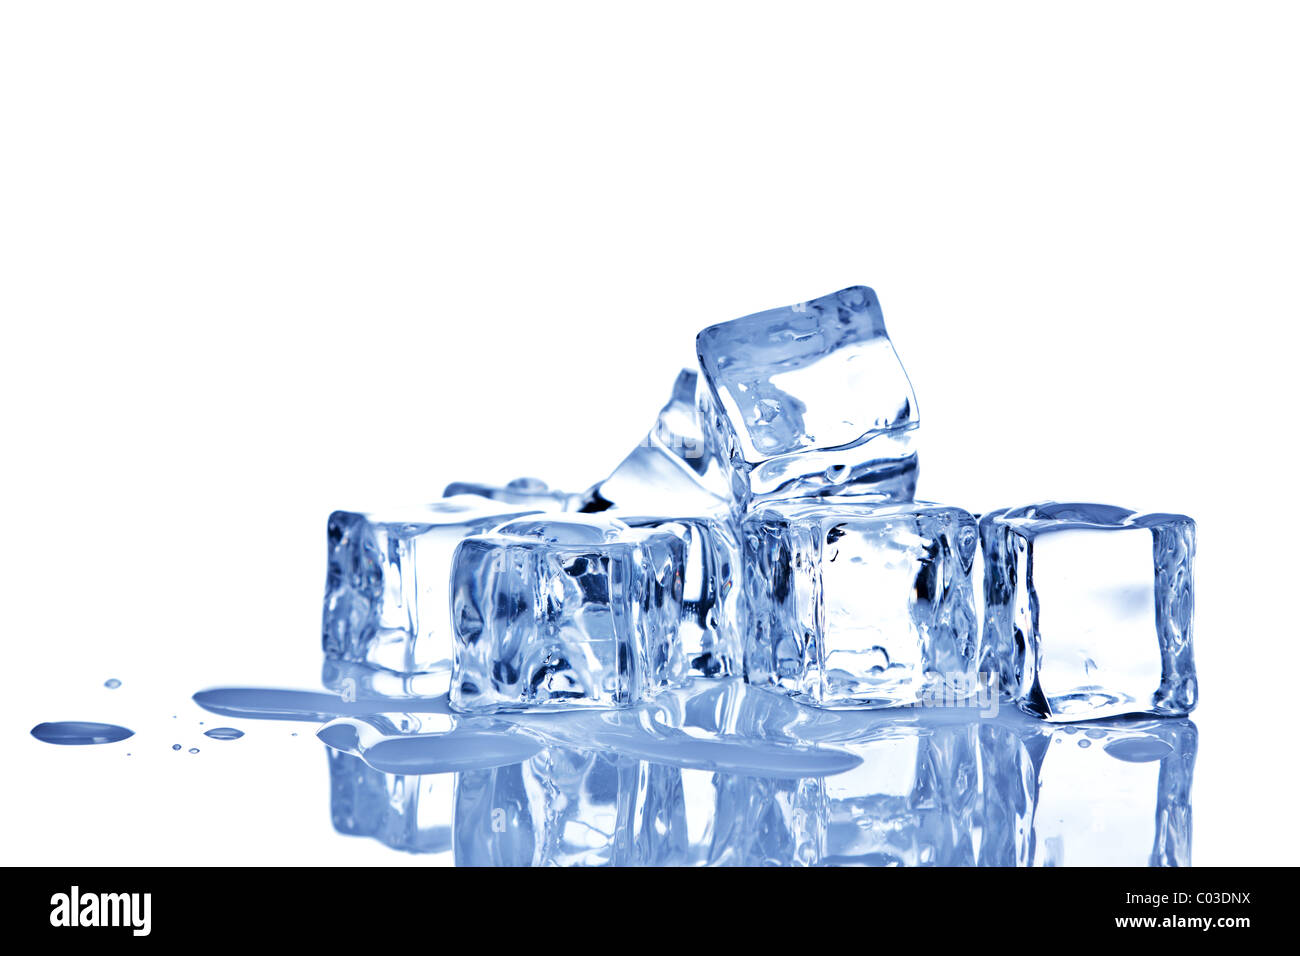 Cubos de hielo de fusión imagen de archivo. Imagen de transparente